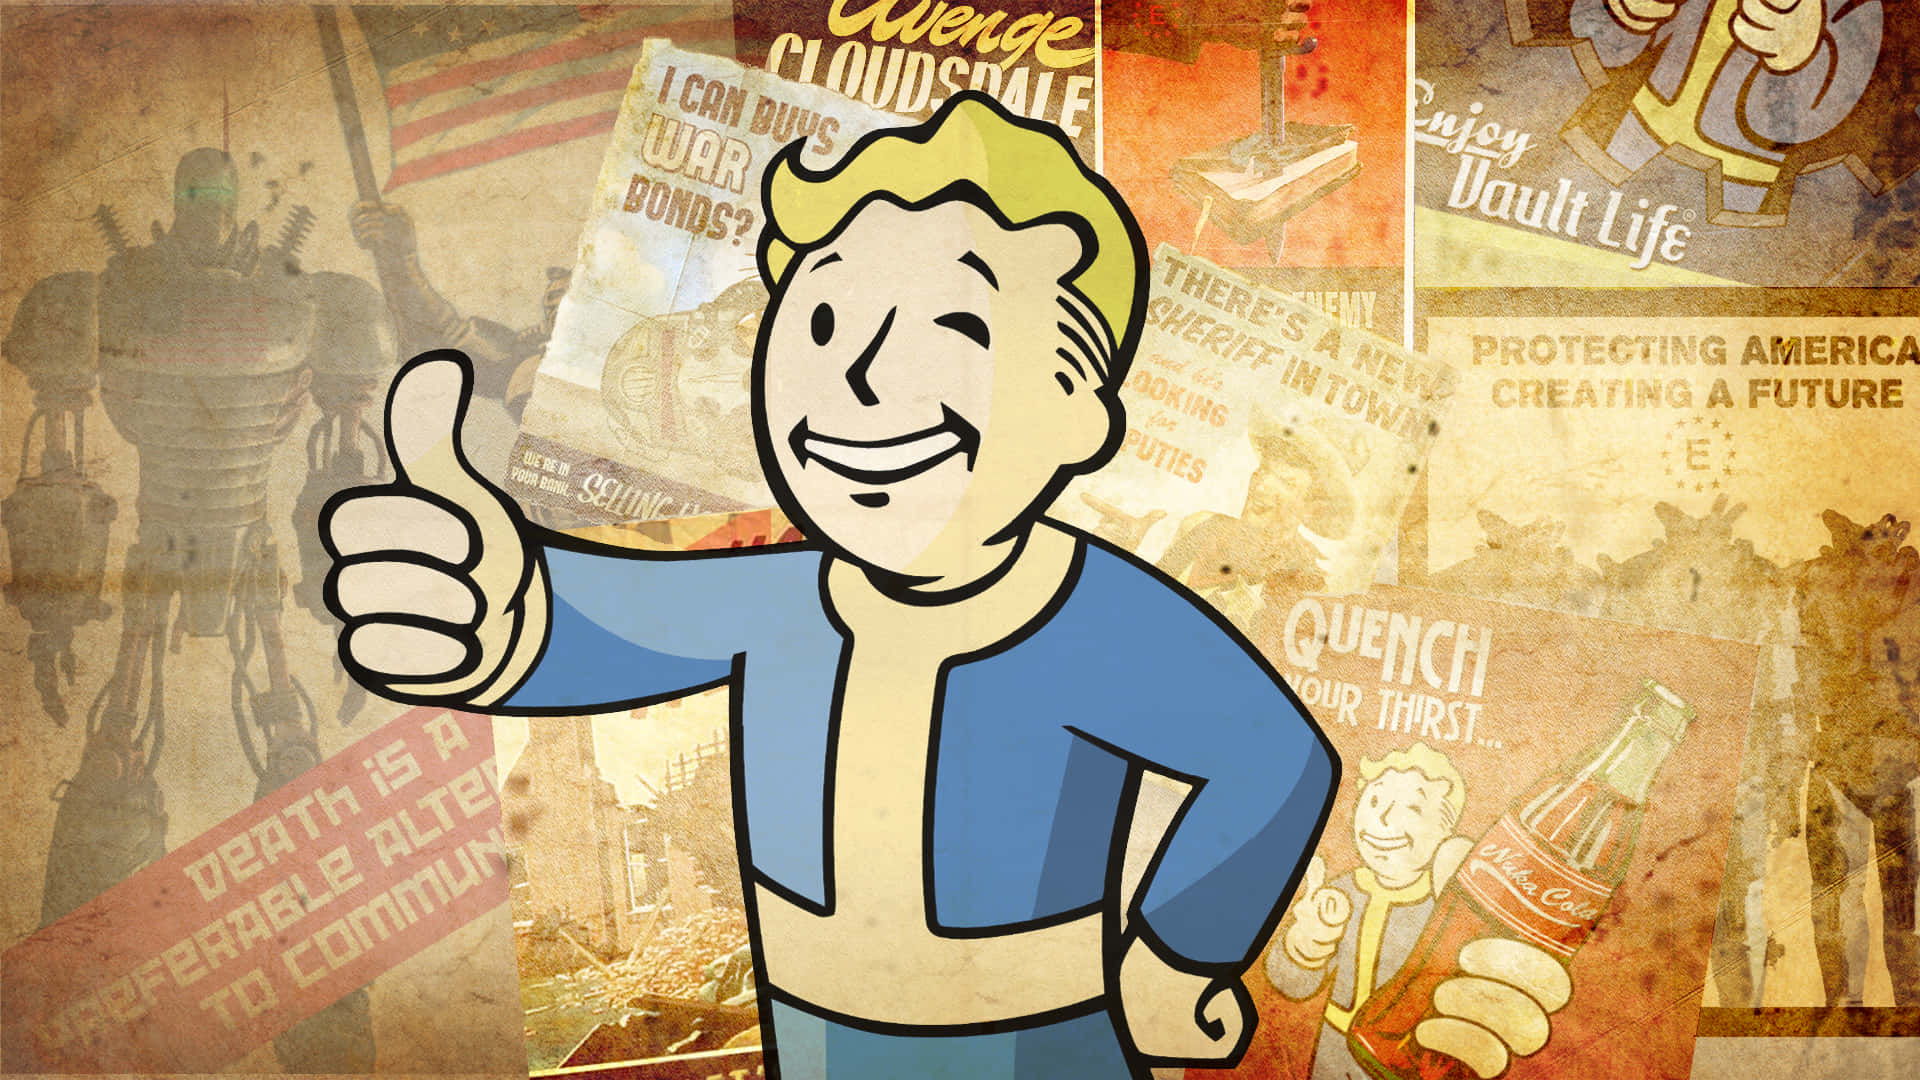 Vault Boy - den ikoniske mascot fra Fallout-videospilserien pryder dette tapet. Wallpaper